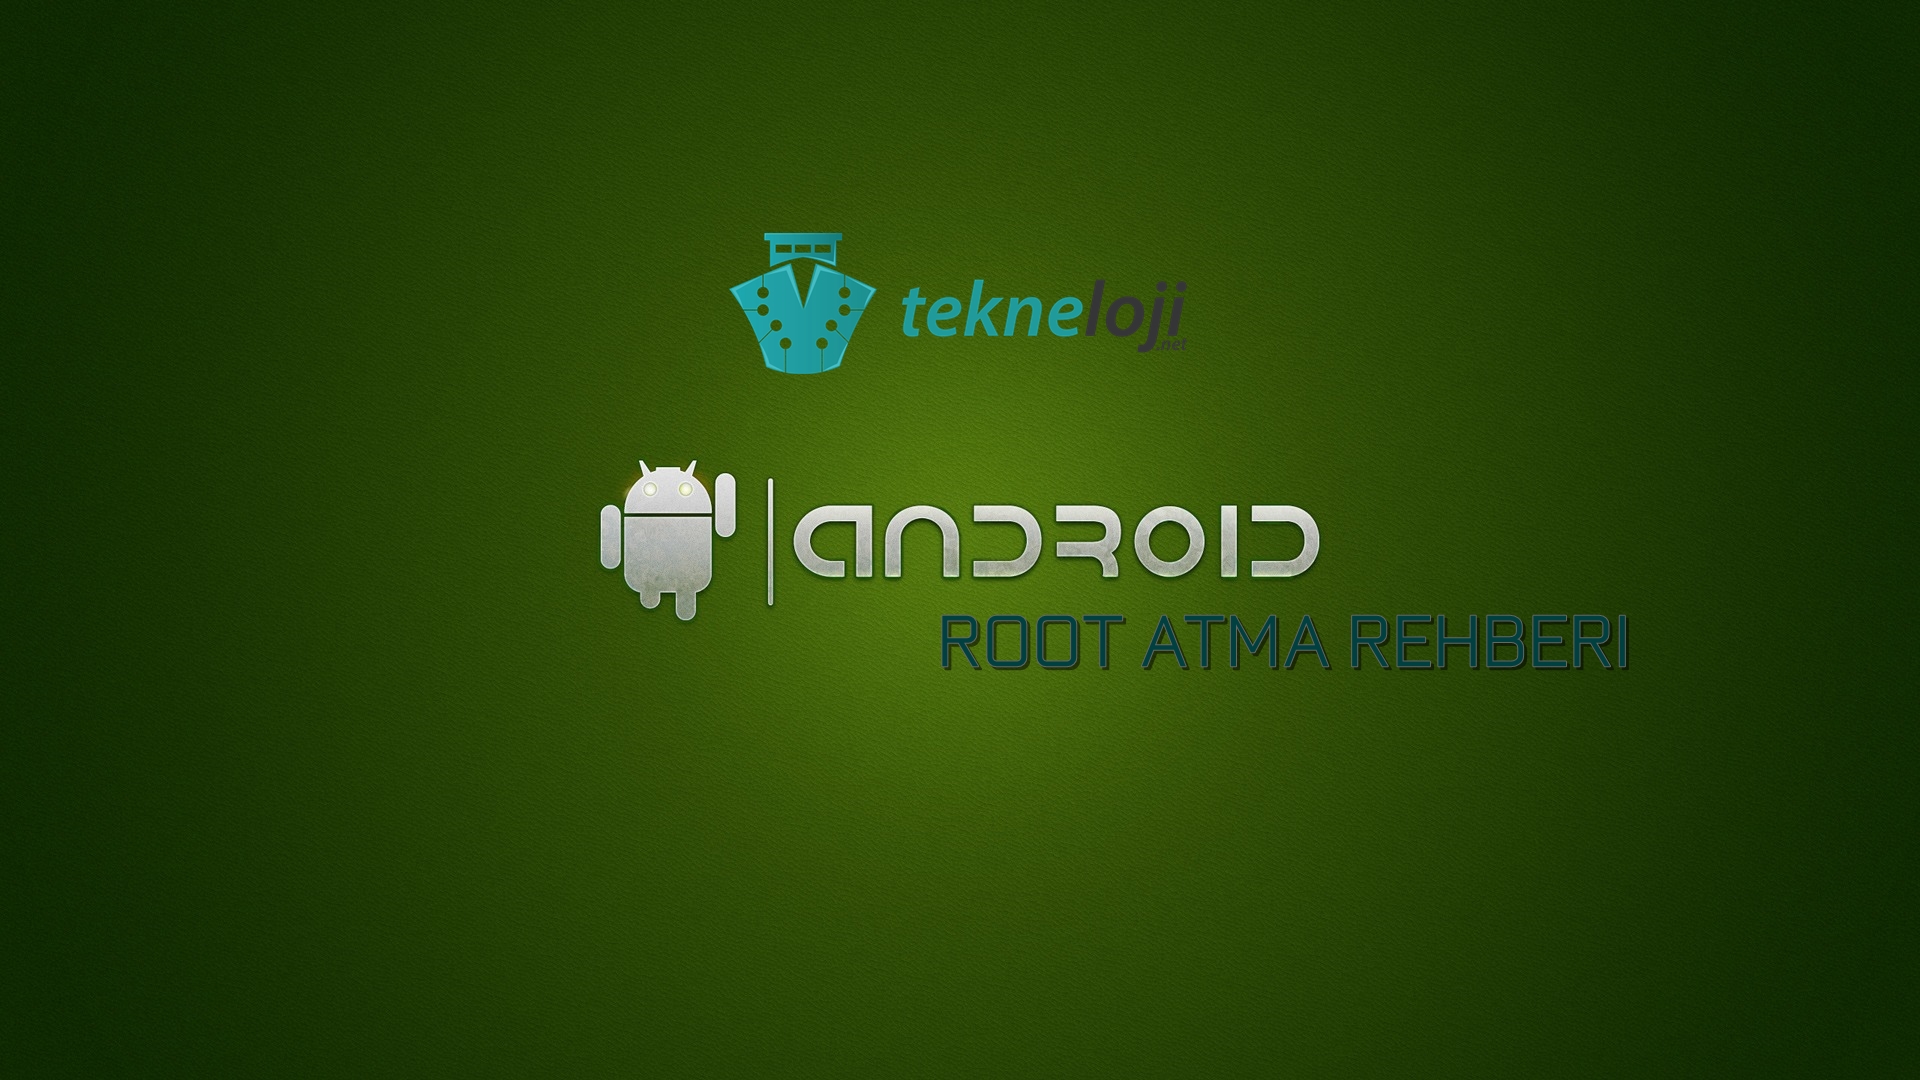 Android Cihaza Nasıl Root Atılır?